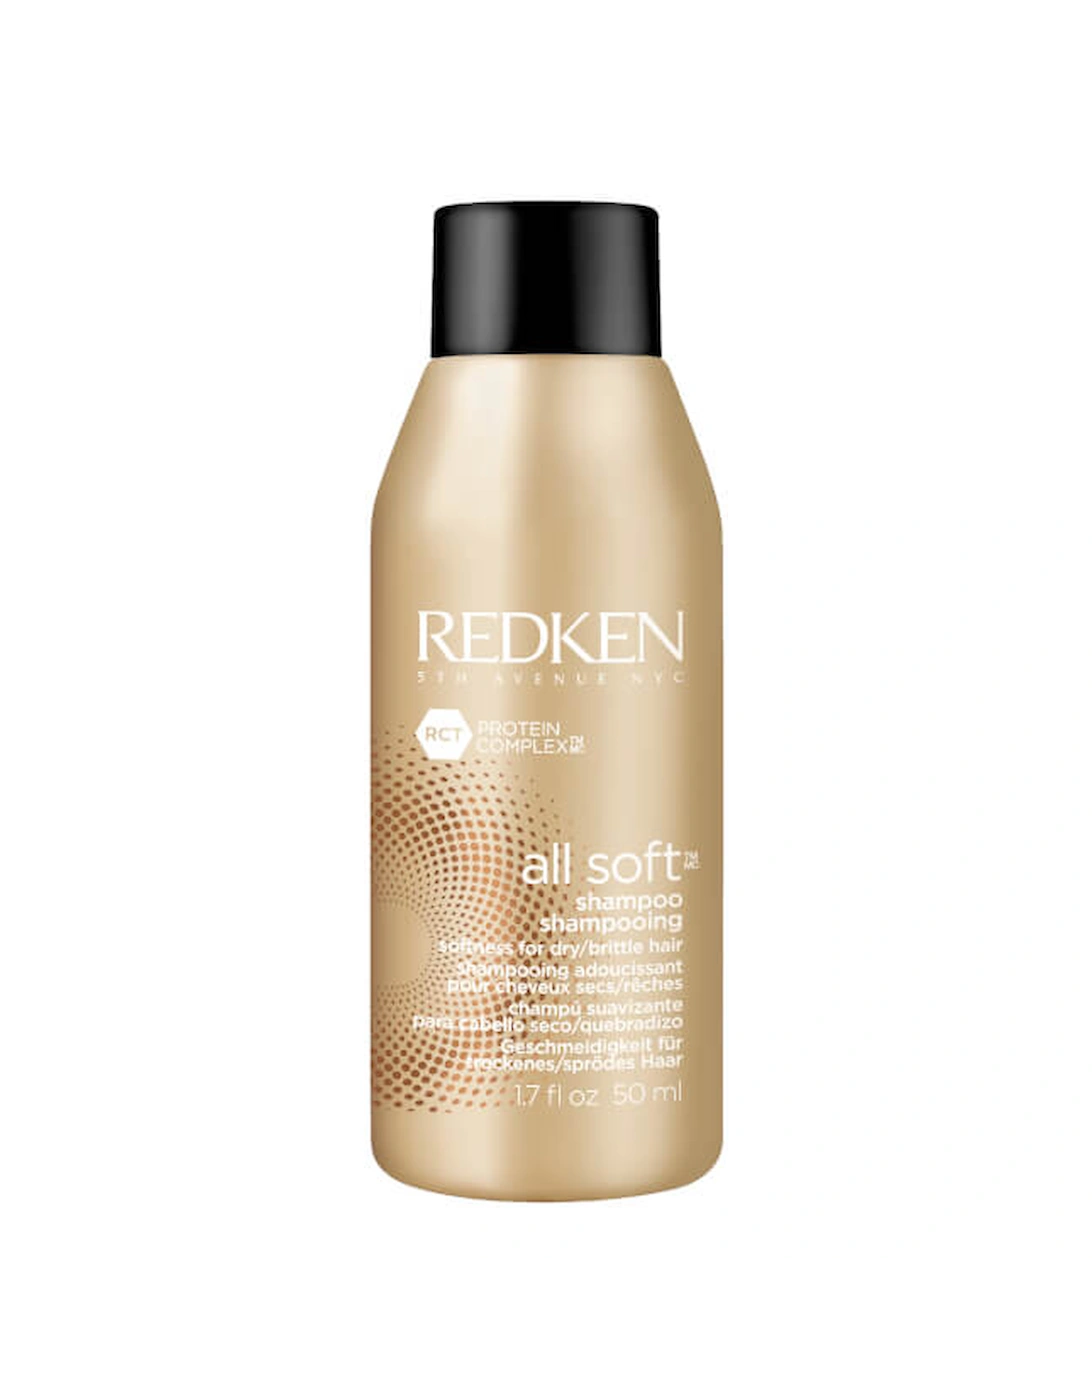 All Soft Shampoo 1.7oz - Redken, 2 of 1